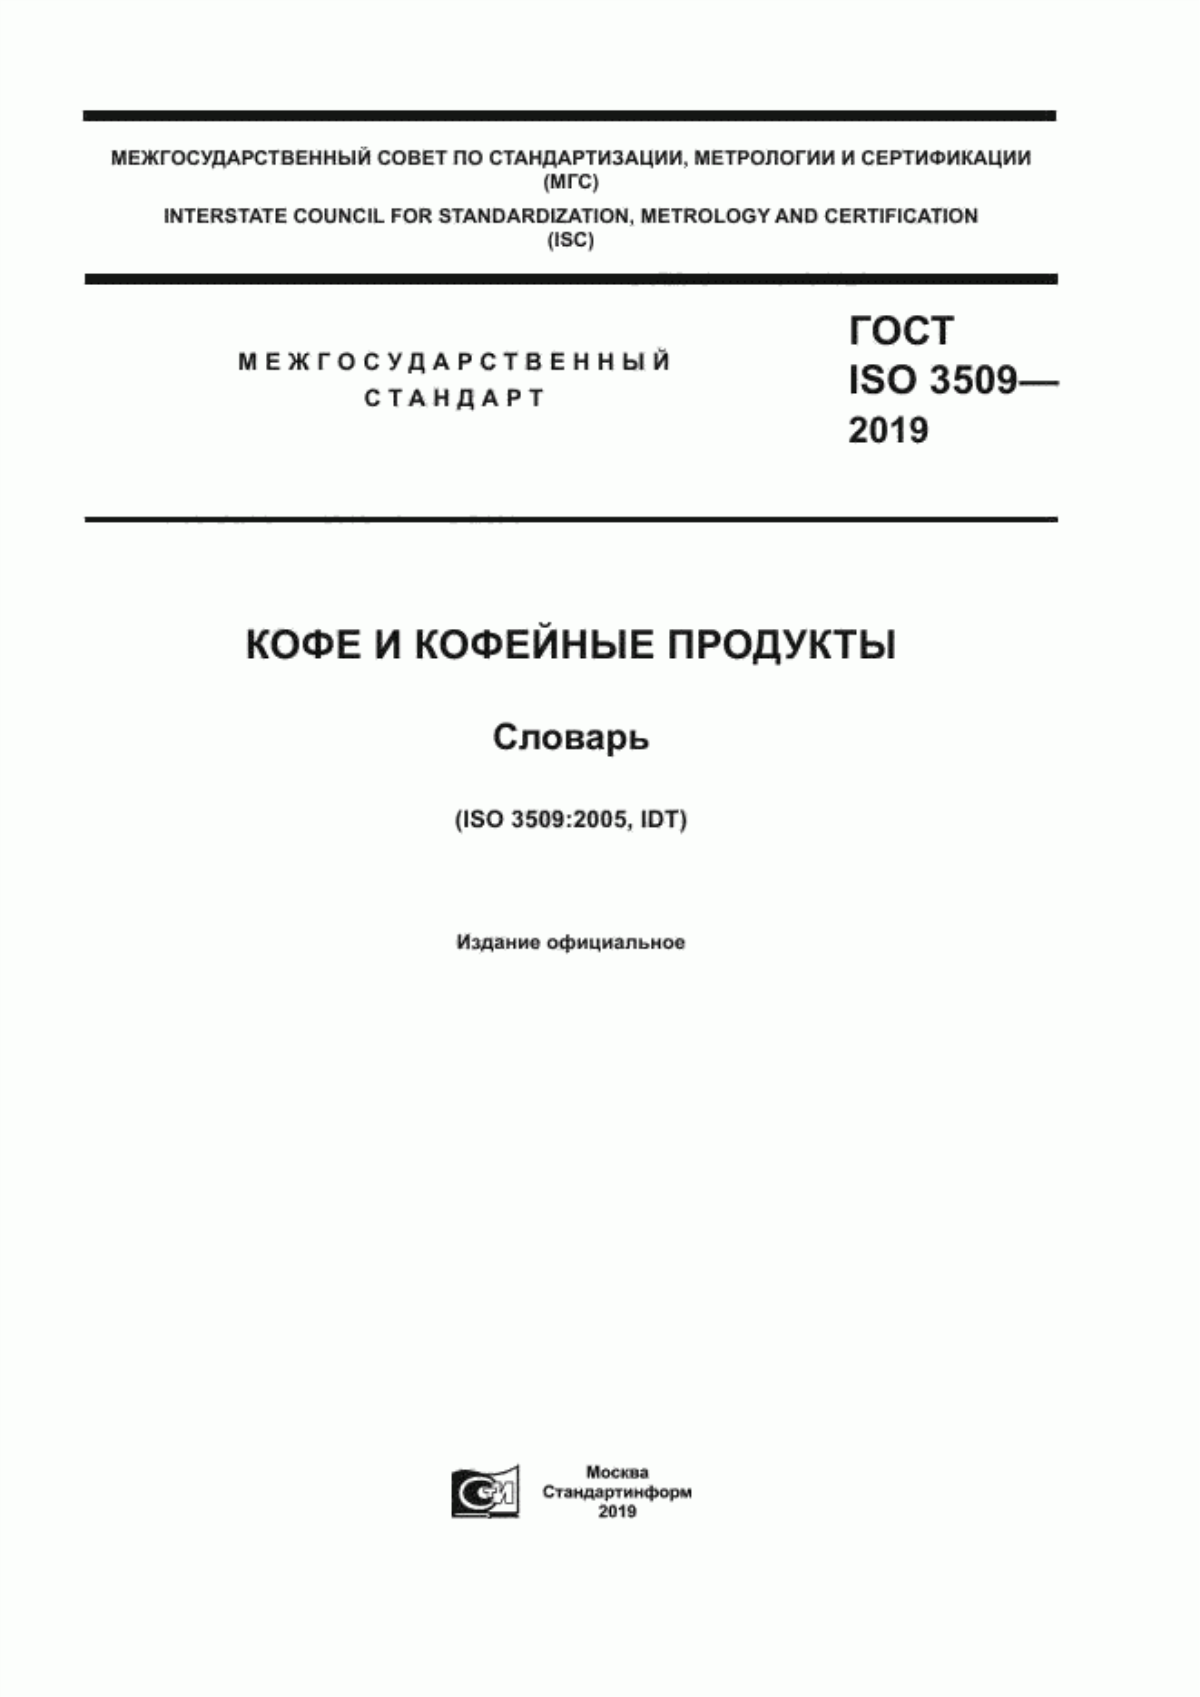 ГОСТ ISO 3509-2019 Кофе и кофейные продукты. Словарь